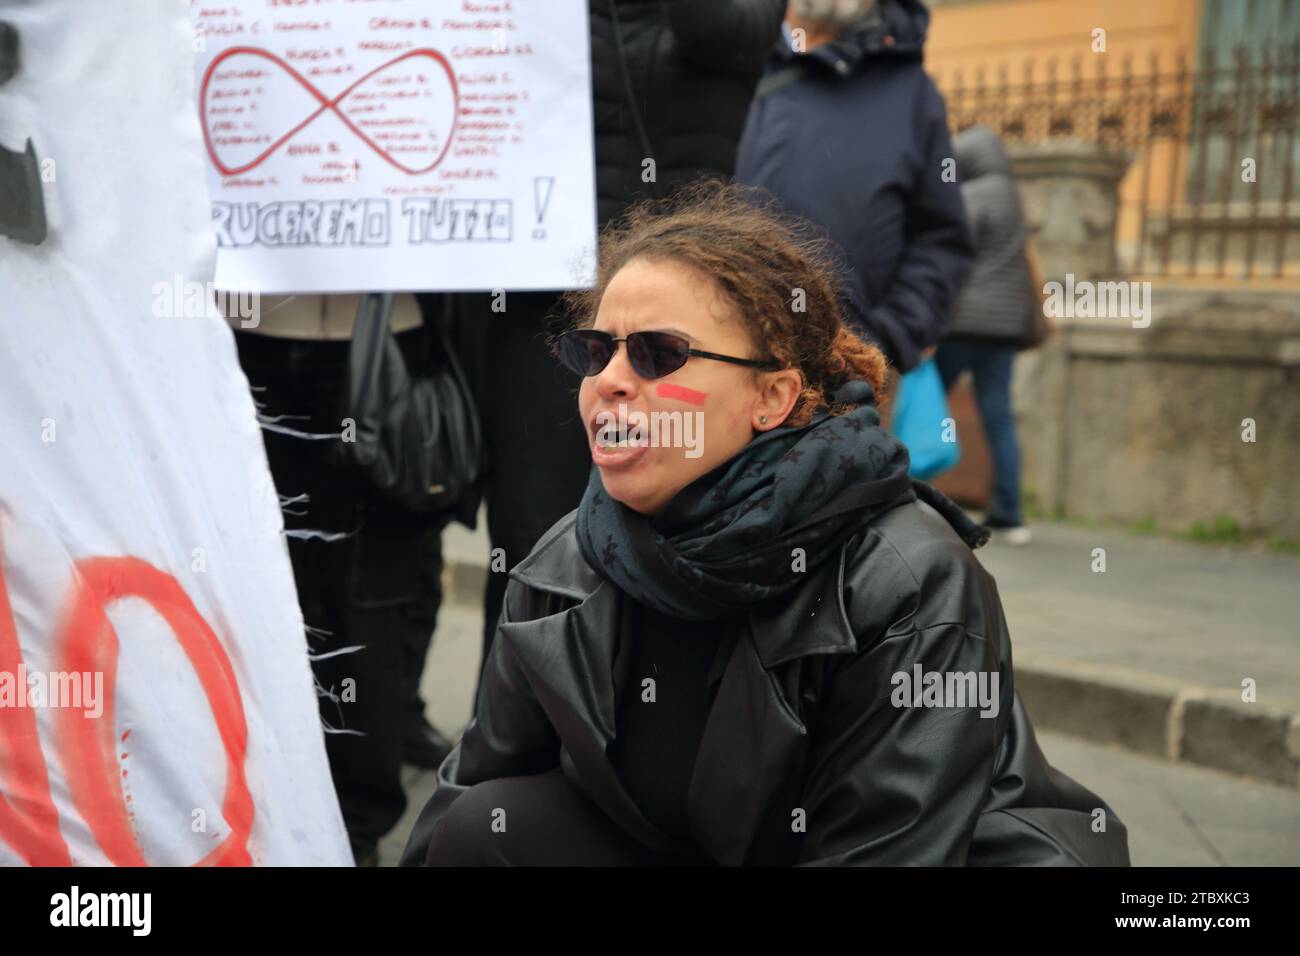 Las mujeres marchan en protesta por los asesinatos de mujeres por parte de maridos y fideicomisarios en el día internacional contra la violencia contra las mujeres. Las mujeres muestran un cartel. Foto de stock